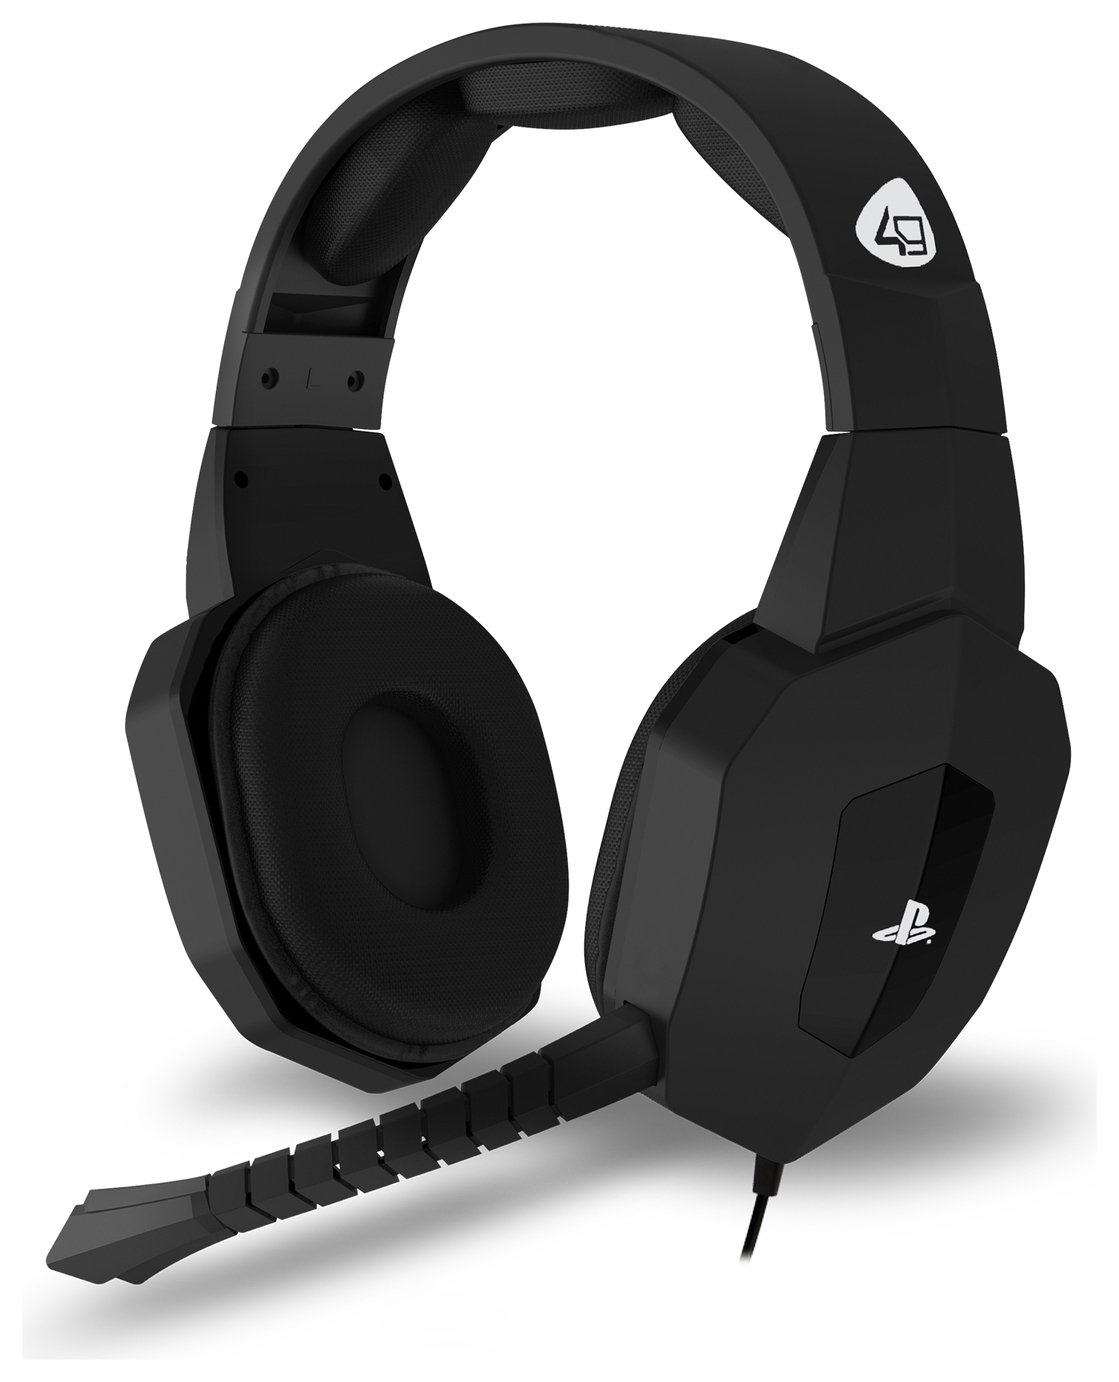 argos headphones for ps4